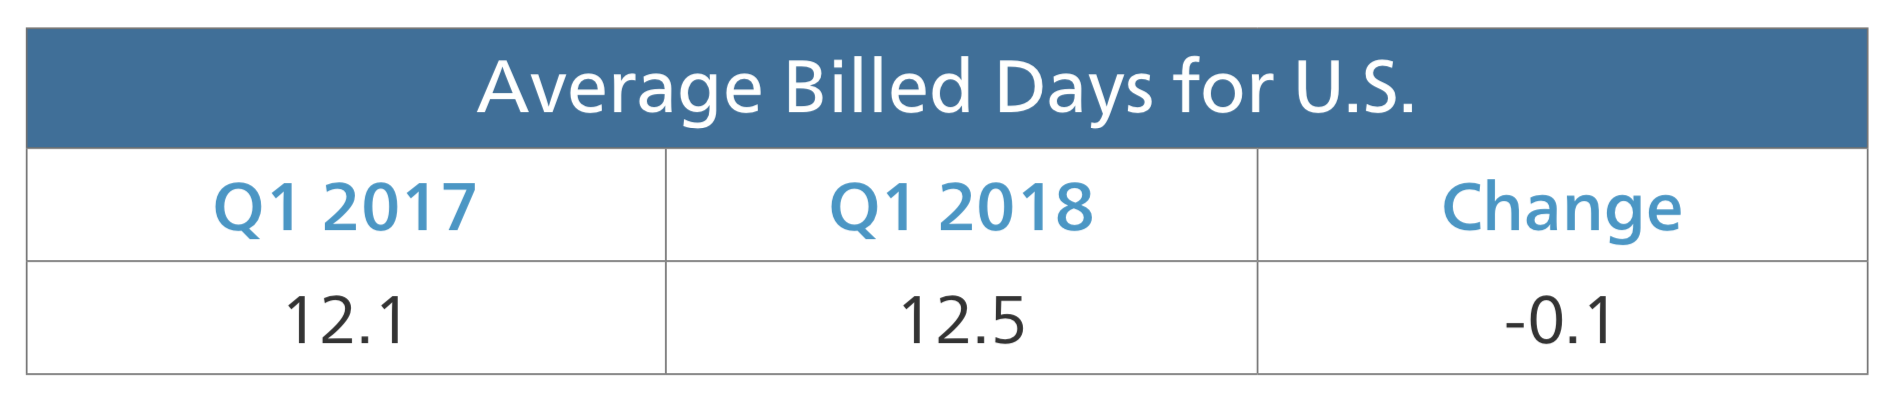 average billed days for US